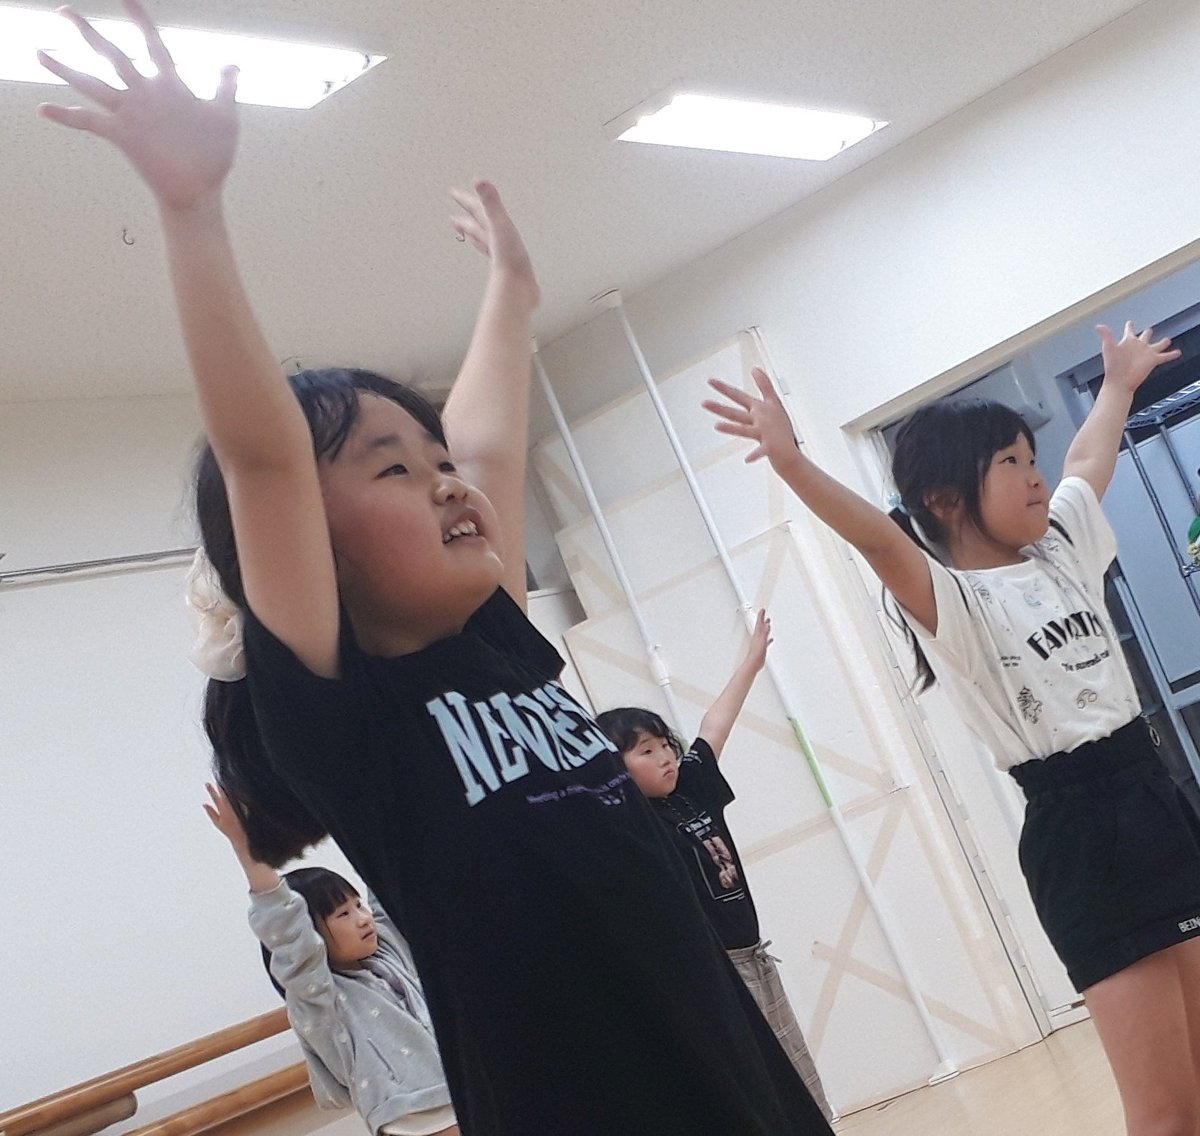 先生が、手がブラブラしてたから腰に付けて！「絶対ブラブラしてなかったぁ！」と言い張る子供達。
意見をハッキリ言える日本て平和だな～😌😌😌
でもね、順ちゃん先生も見てたけど、ブラブラしてたで～😌😌😌無料体験受付中です‼️
#happyjダンススタジオ #キッズダンス #子供ダンス #ジャズダンス